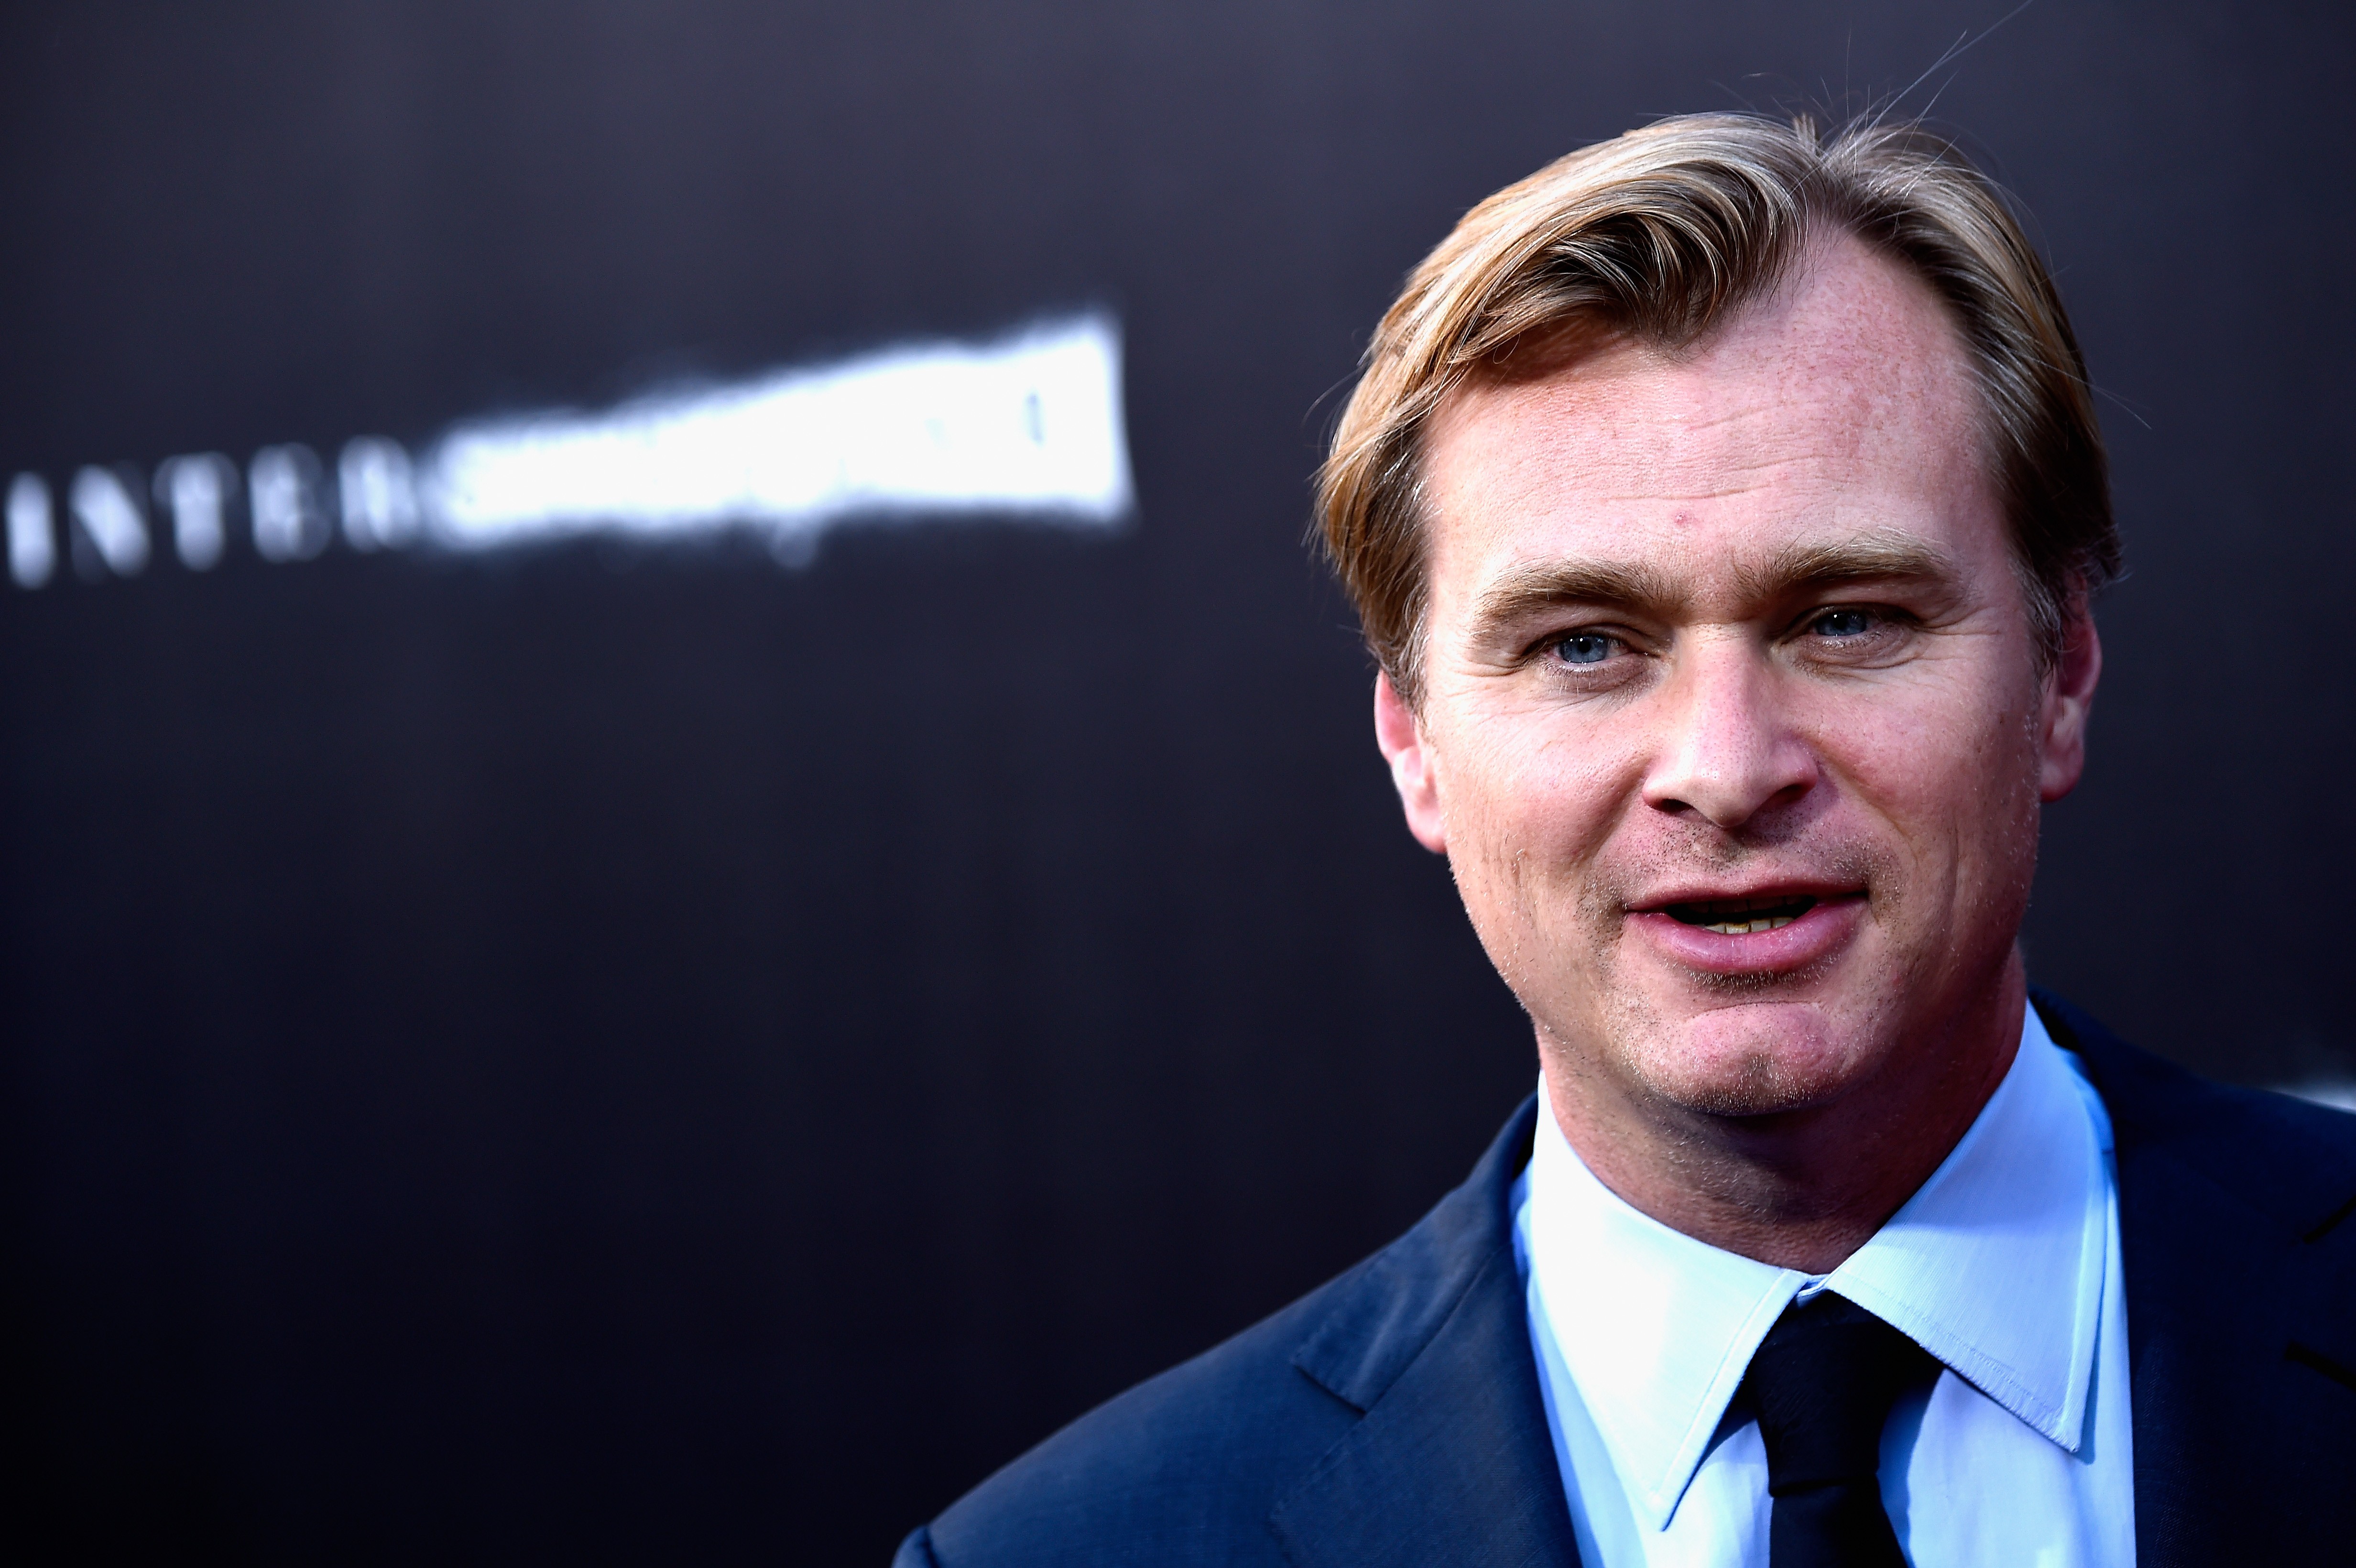 Nolan ainda não anunciou seu próximo filme em seguida a 'Interestelar' (Foto: Getty Images)